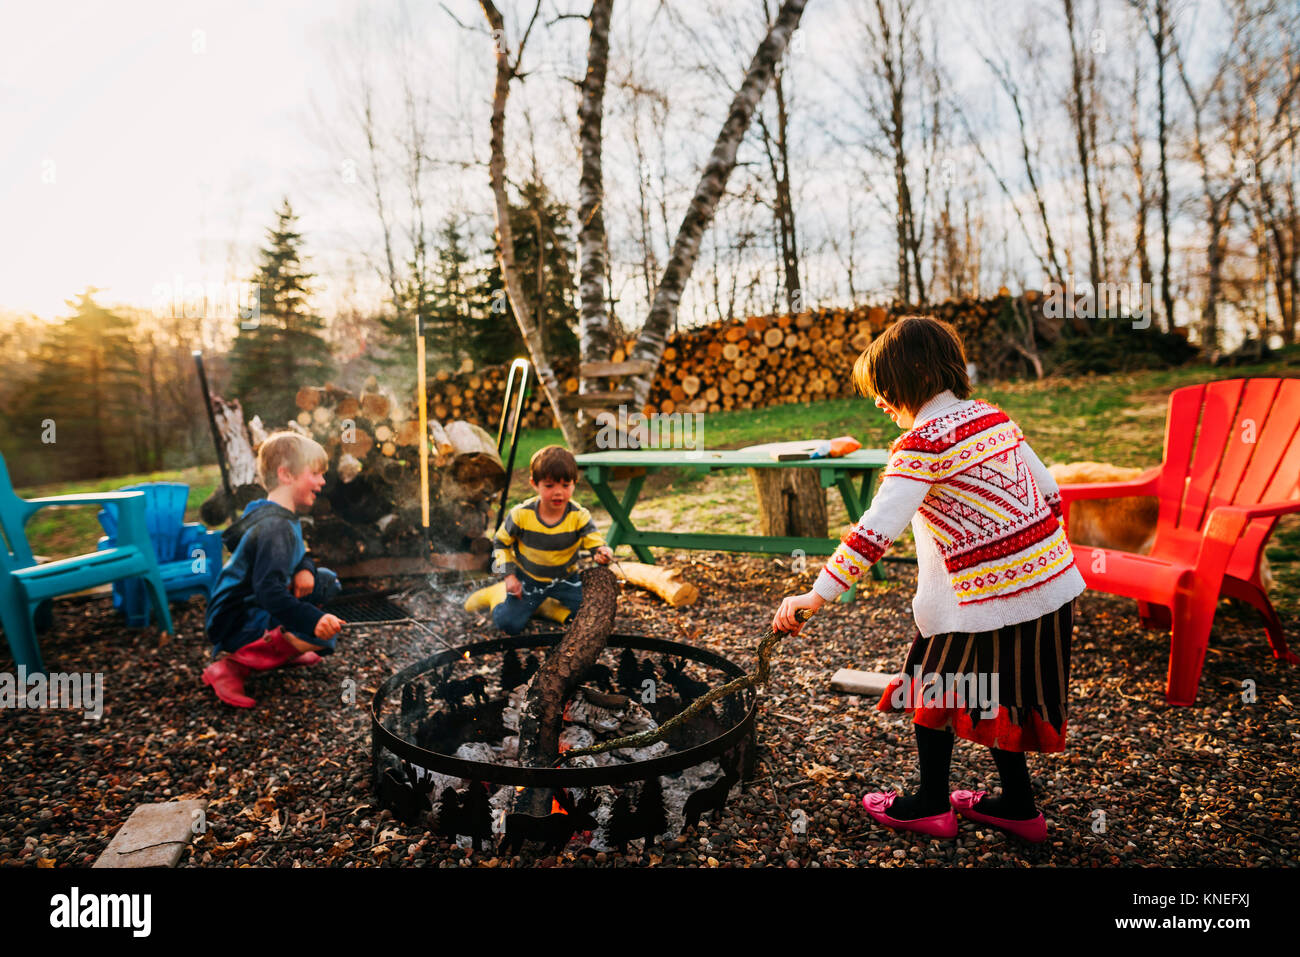 Three children sitting around a campfire Stock Photo